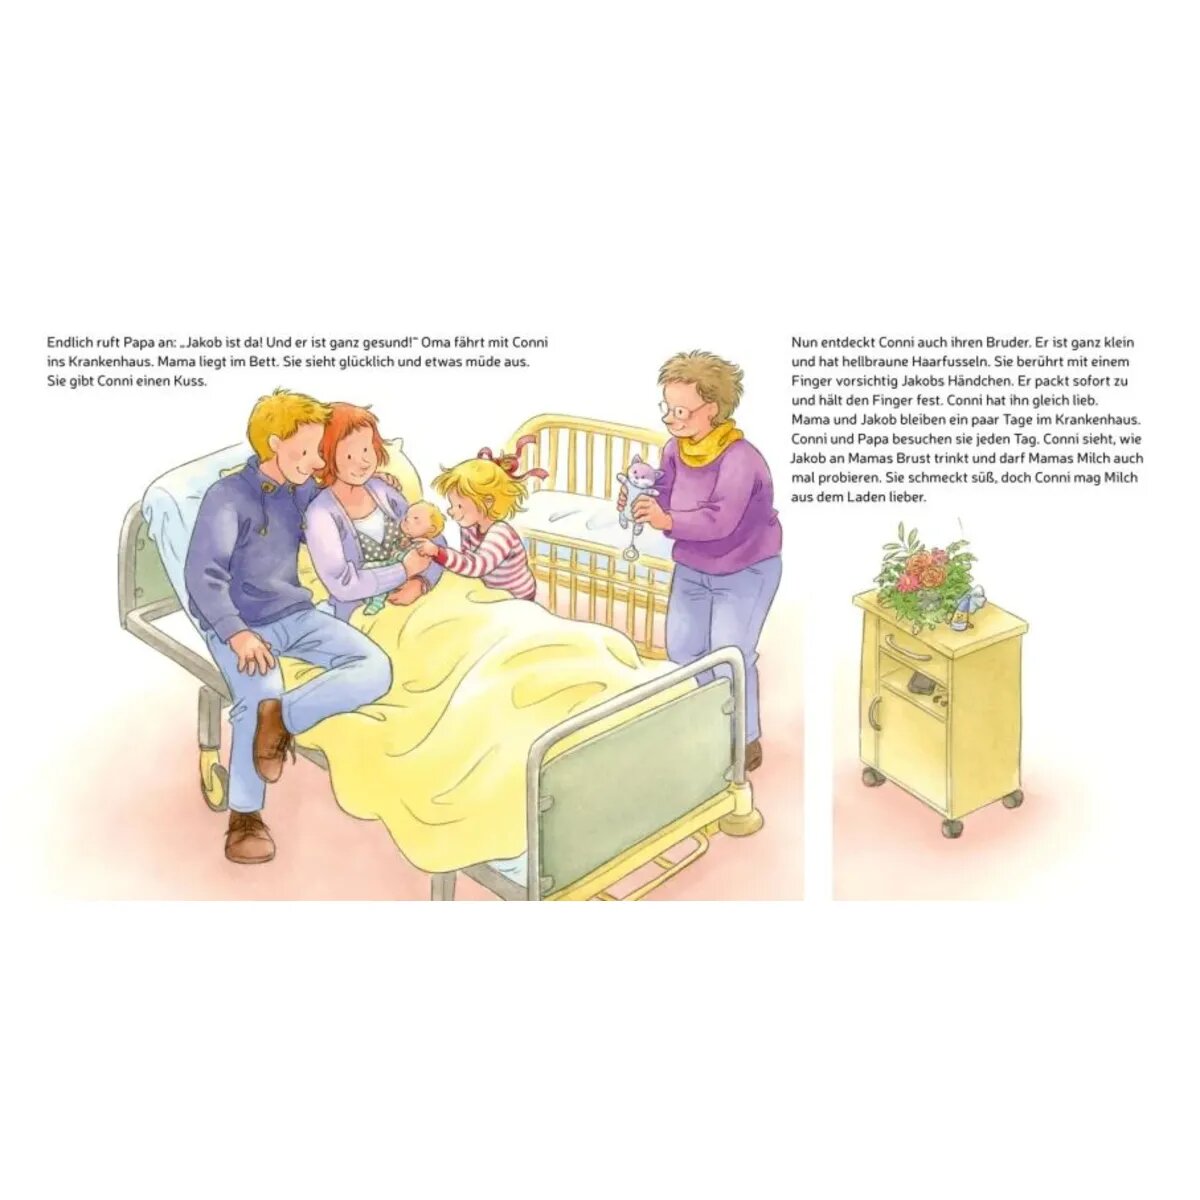 Carlsen Verlag LESEMAUS 118: Conni und das neue Baby